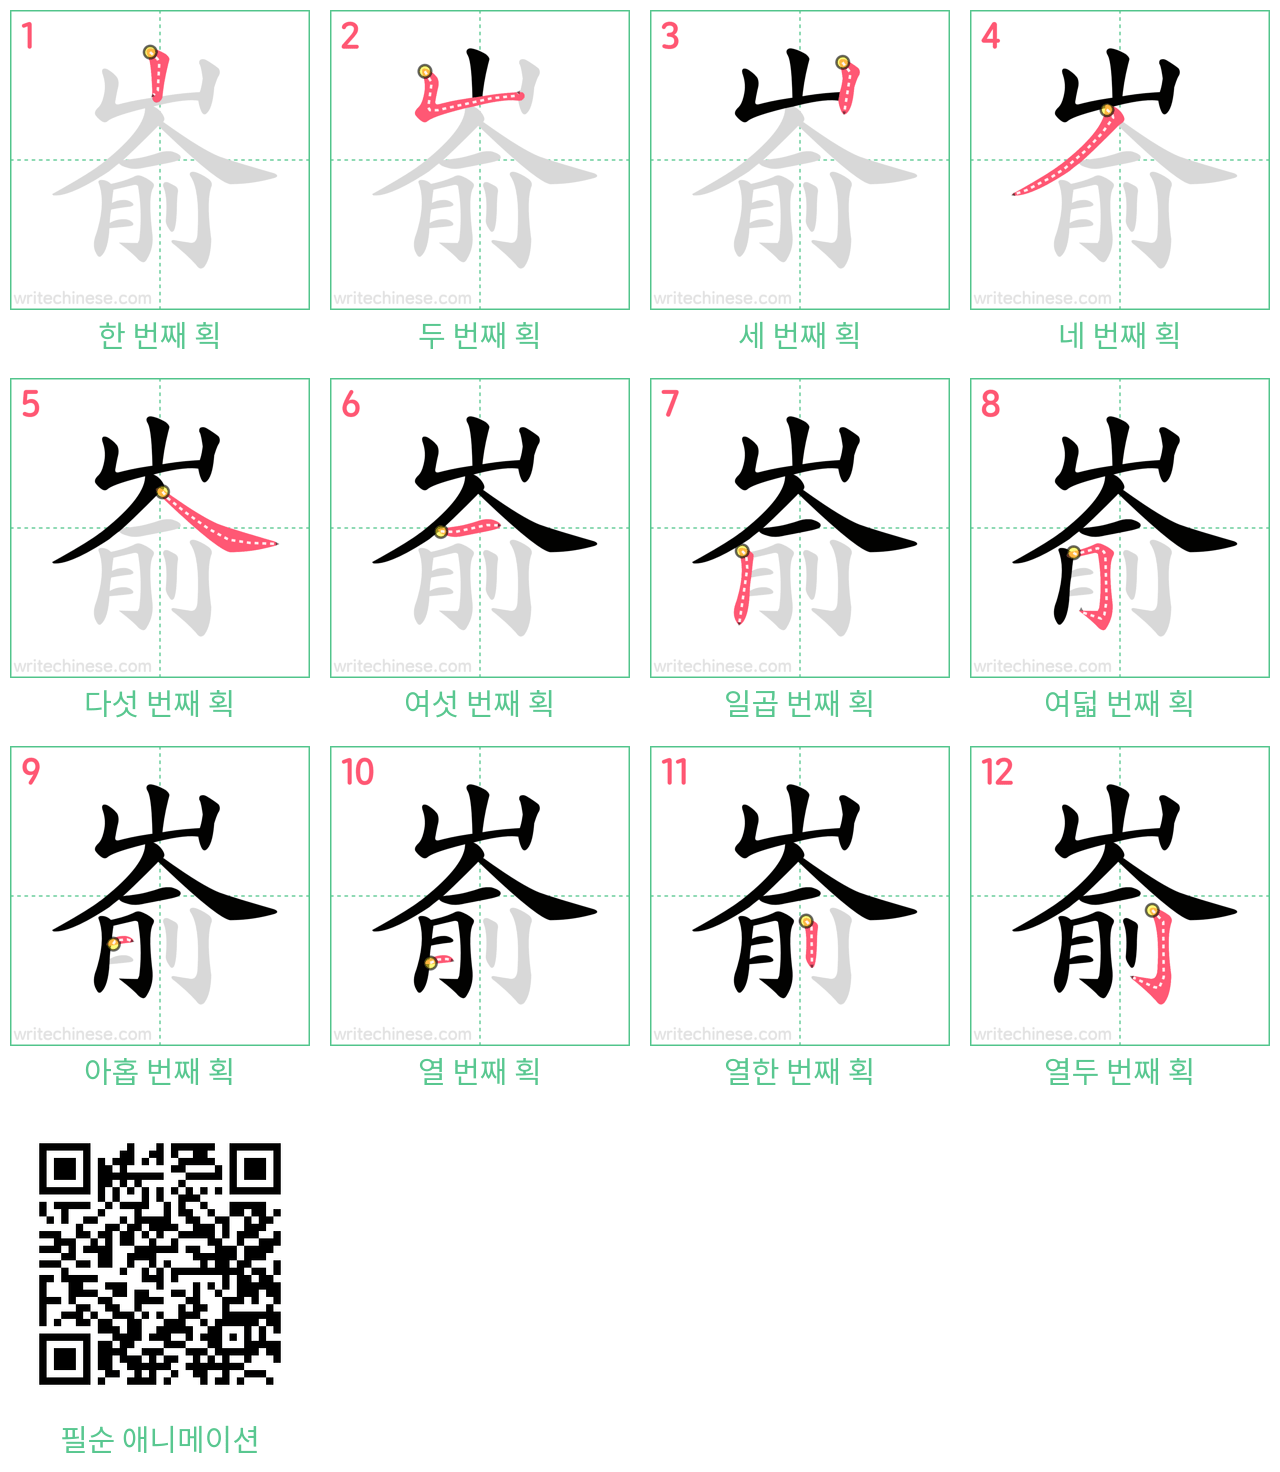 嵛 step-by-step stroke order diagrams